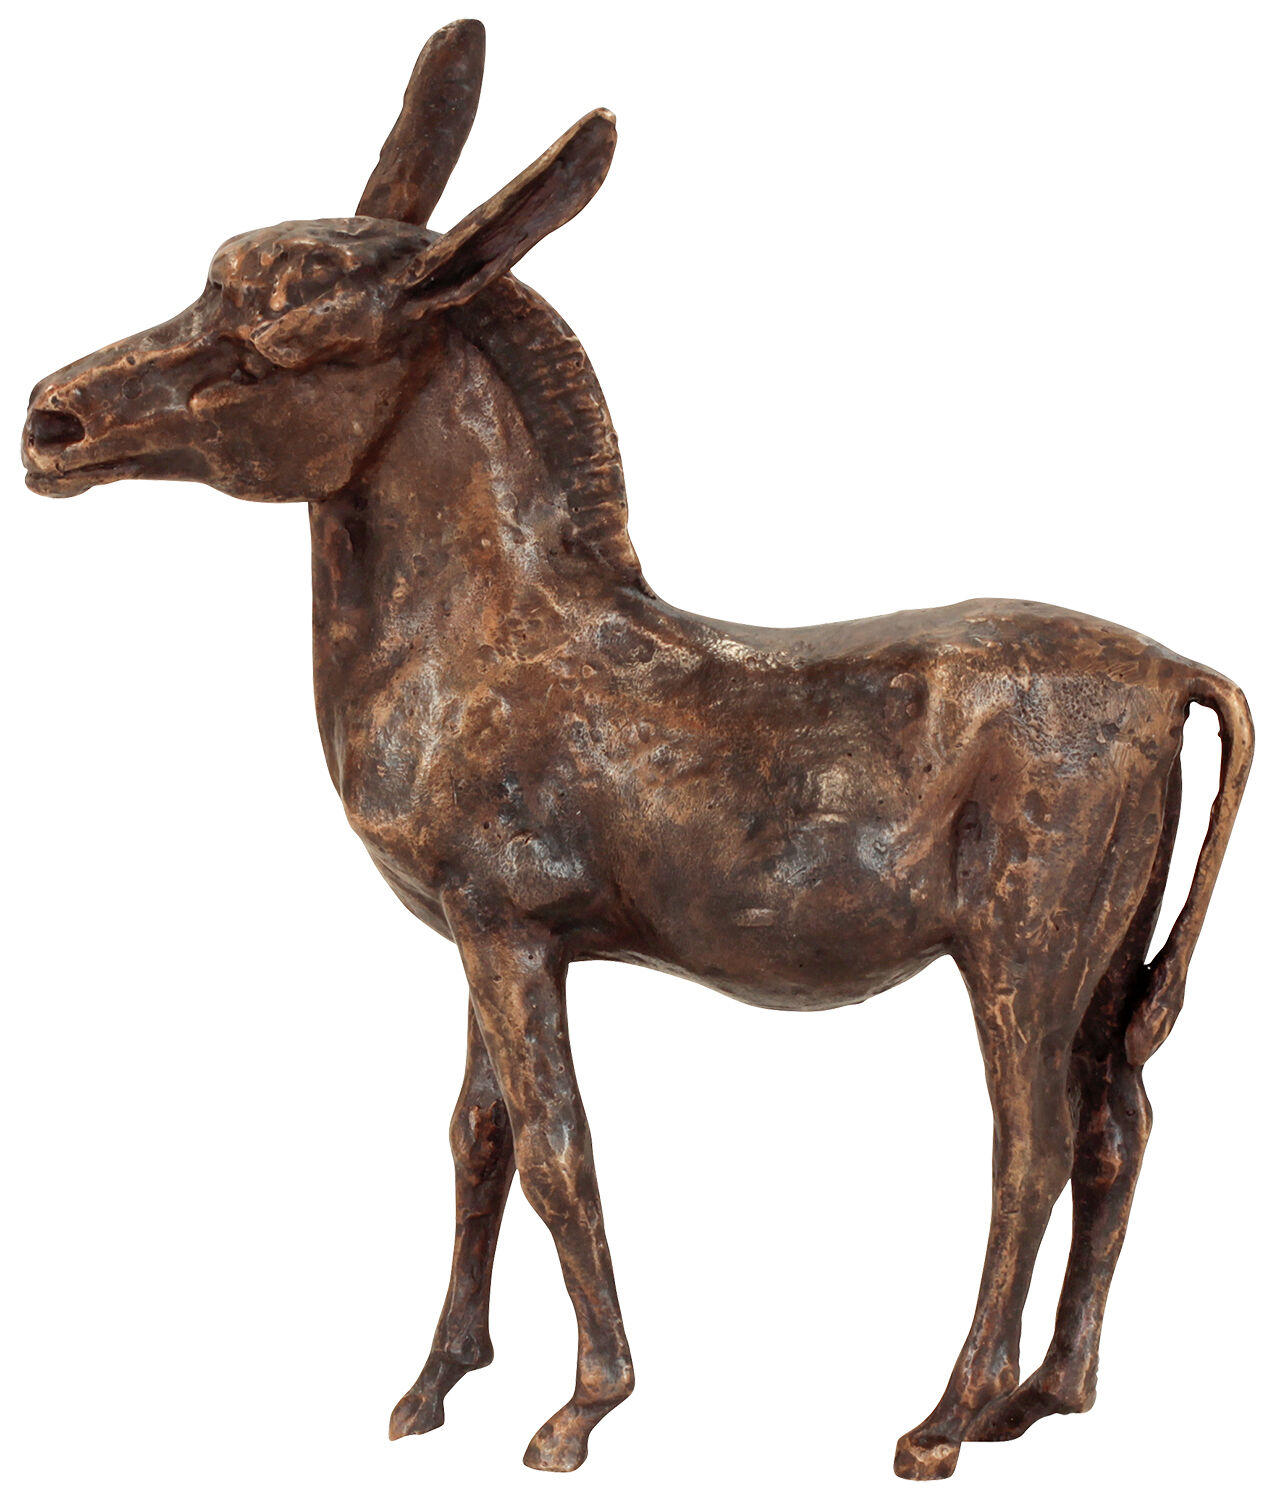 Skulptur "Esel", Reduktion in Bronze von Kurt Arentz